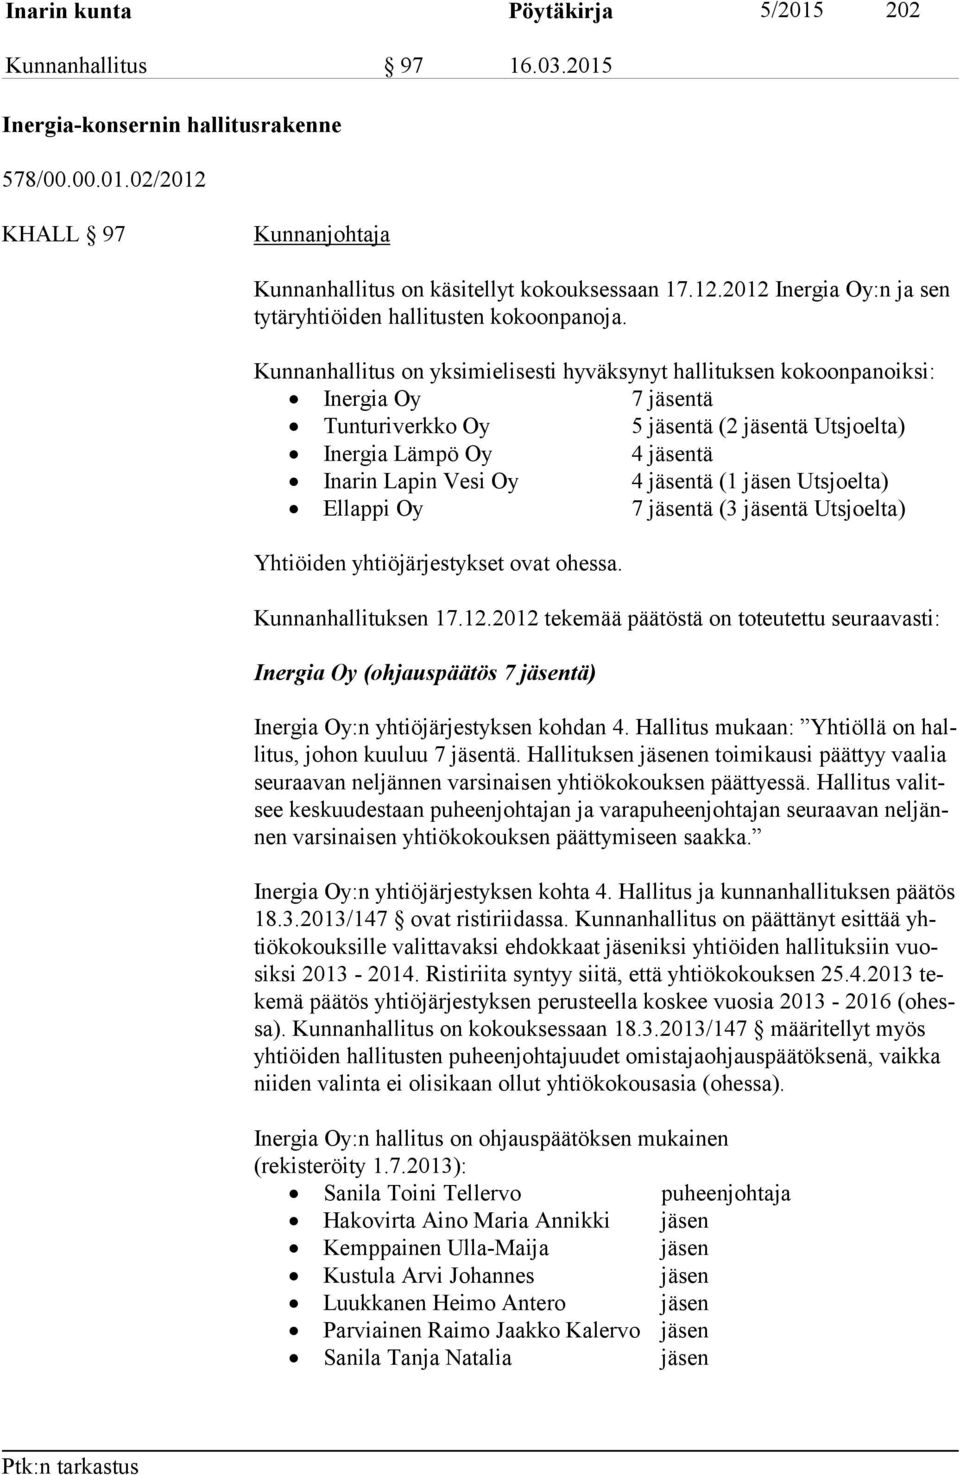 (1 jäsen Utsjoelta) Ellappi Oy 7 jäsentä (3 jäsentä Utsjoelta) Yhtiöiden yhtiöjärjestykset ovat ohessa. Kunnanhallituksen 17.12.